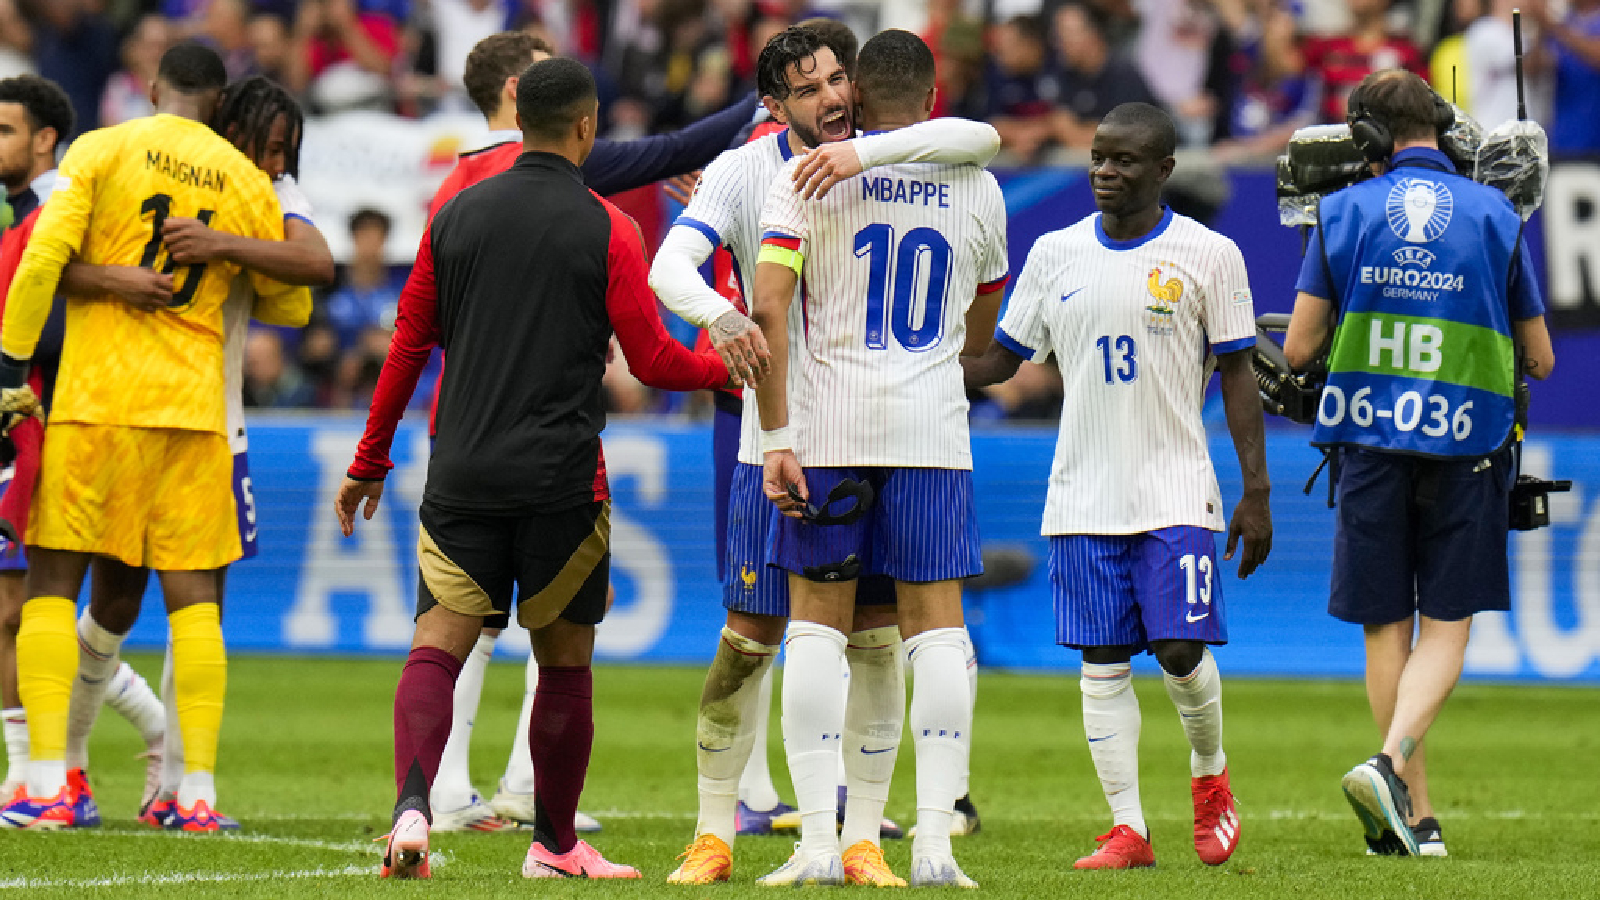 Frankrijk vs België, EURO 2024 Hoogtepunten: Frankrijk wint met 1-0, eigen doelpunt van Jan Vertonghen in de laatste minuut brengt Mbappe en vrienden door naar de kwartfinales |  Voetbalnieuws